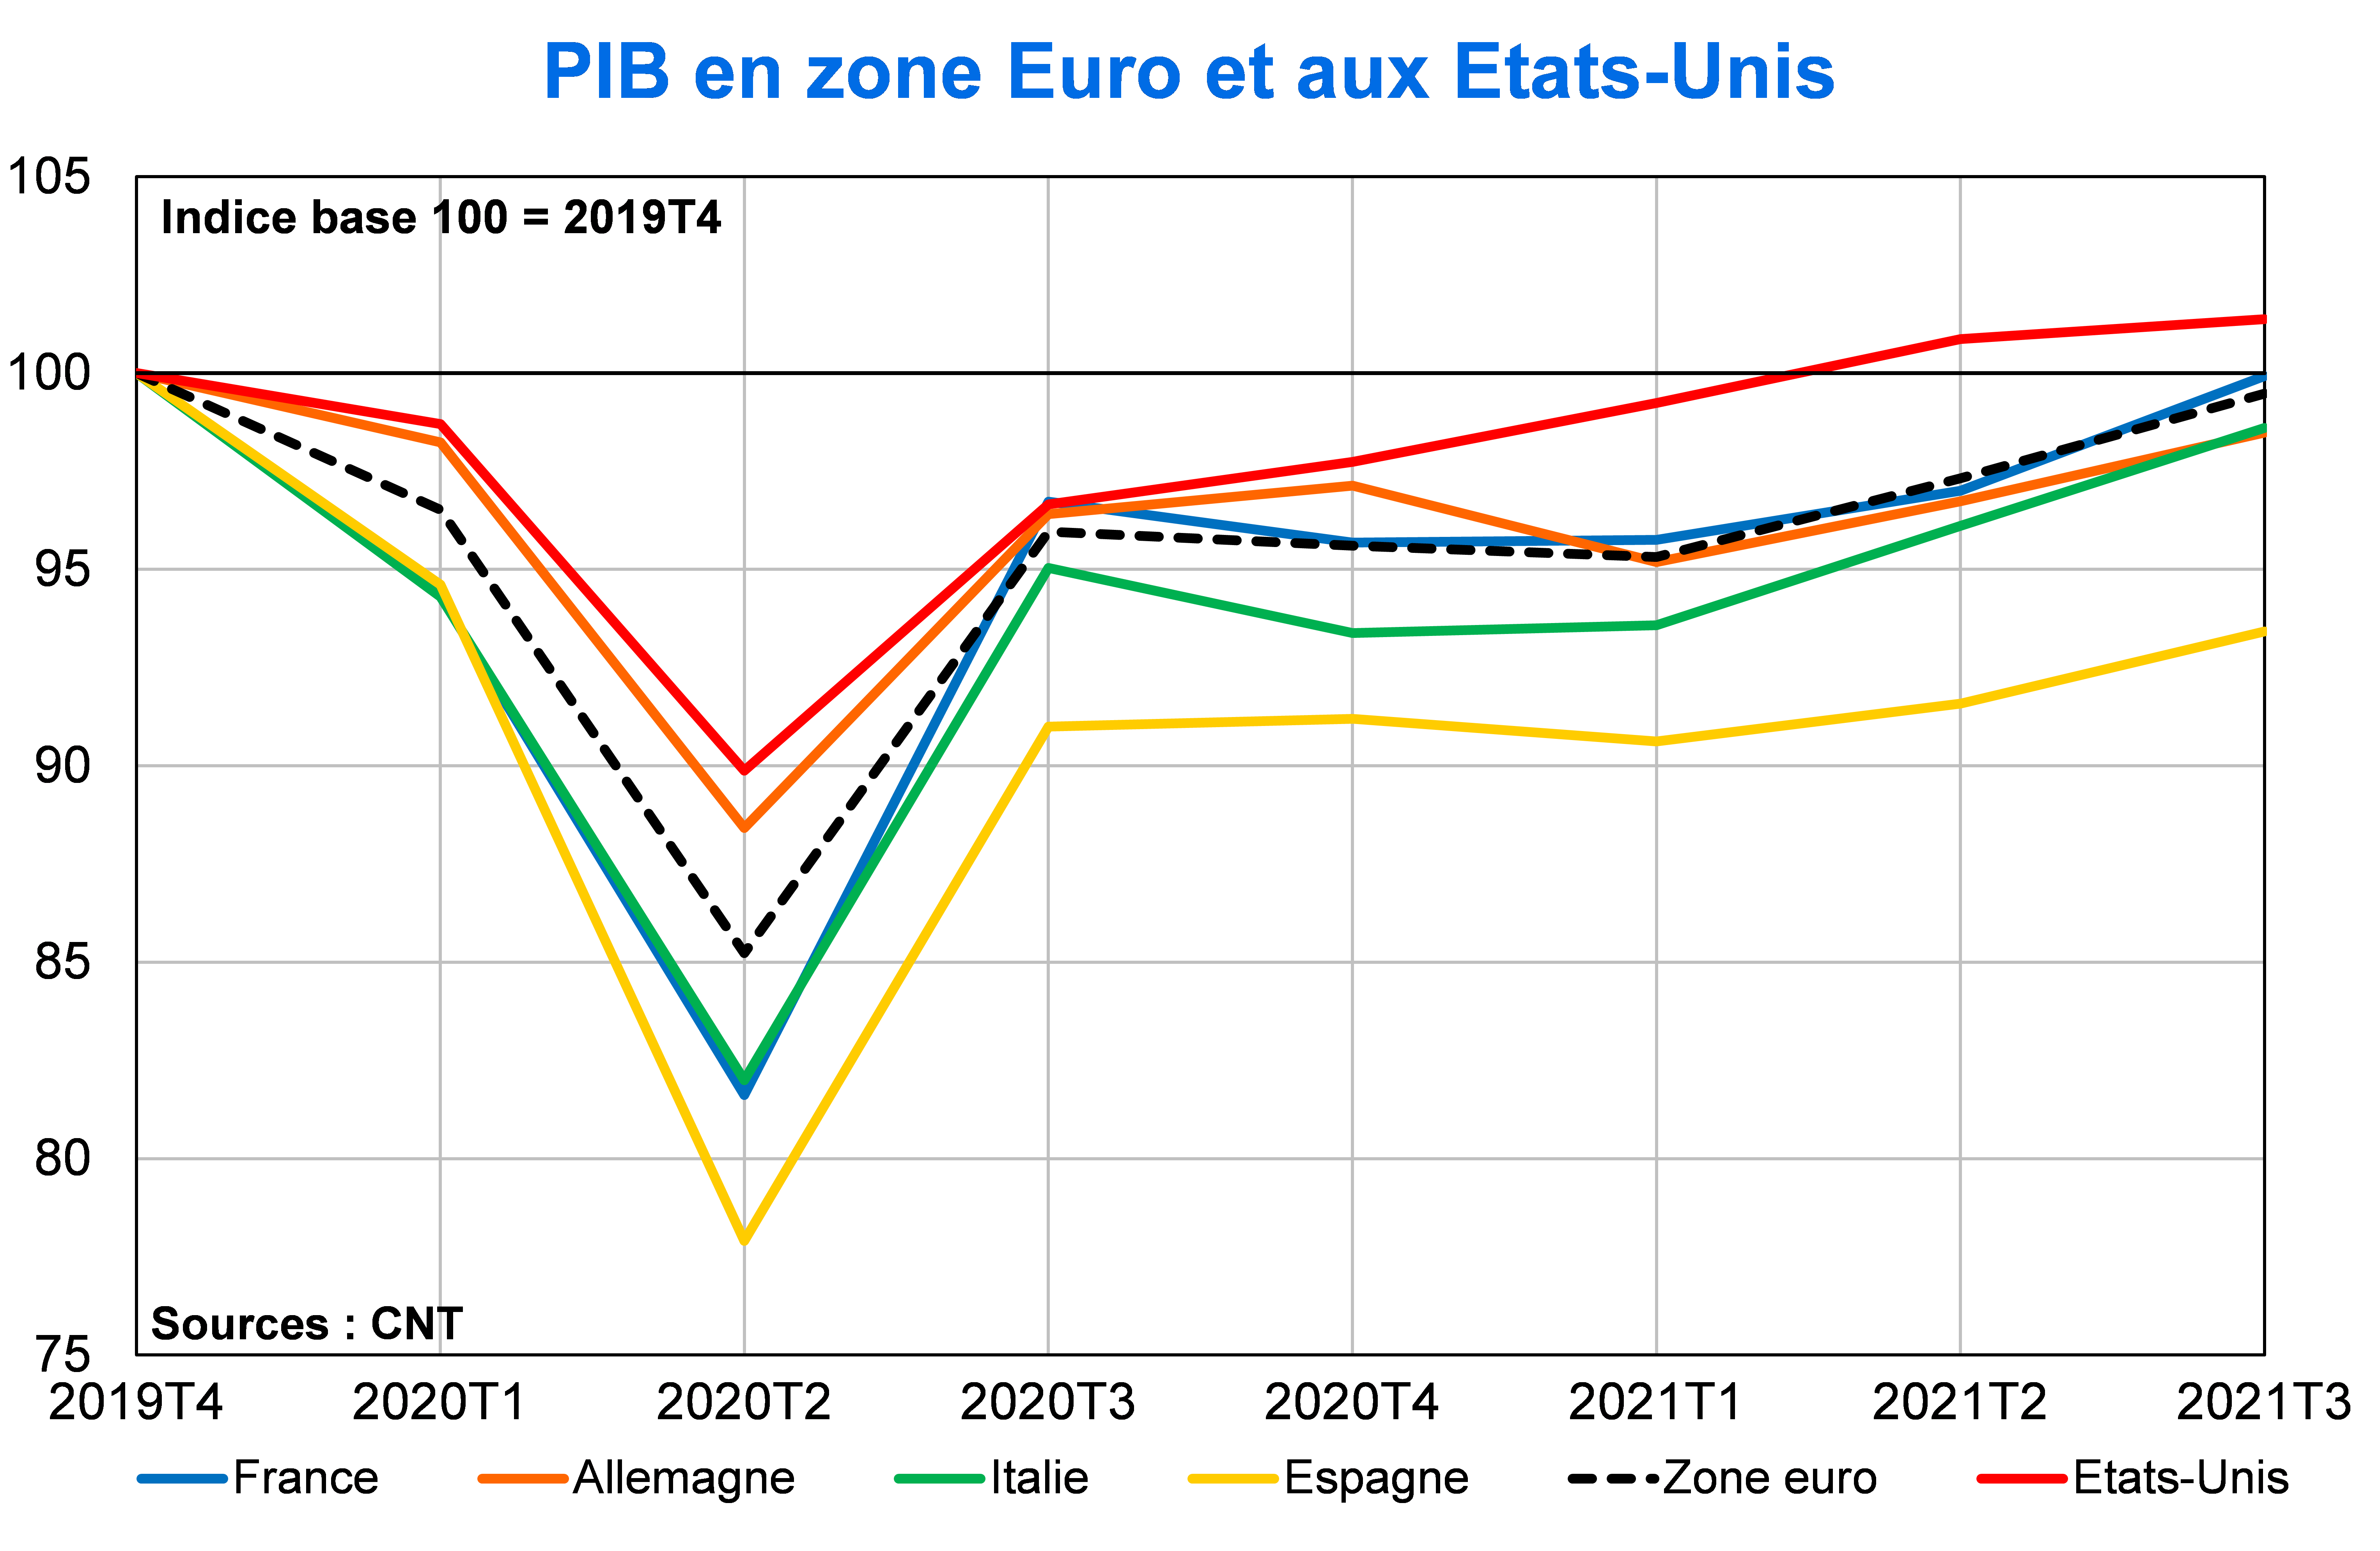 PIB en Zone euro et aux Etats-Unis